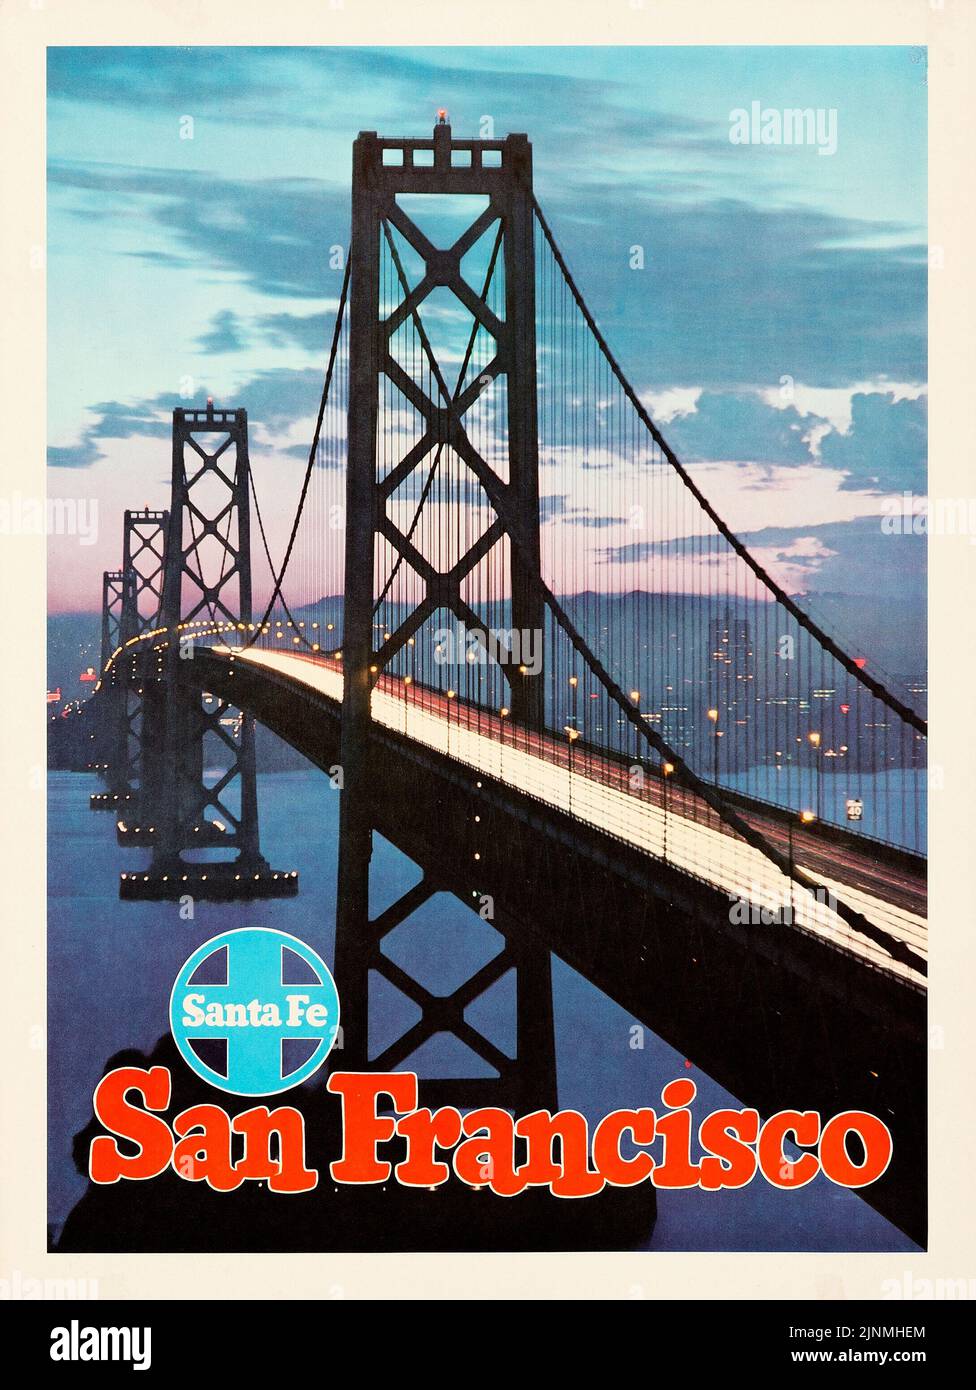 Affiche du chemin de fer de Santa Fe de San Francisco (c. Langlais). L'exploit de poster de voyage. Le pont de la baie d'Oakland Banque D'Images